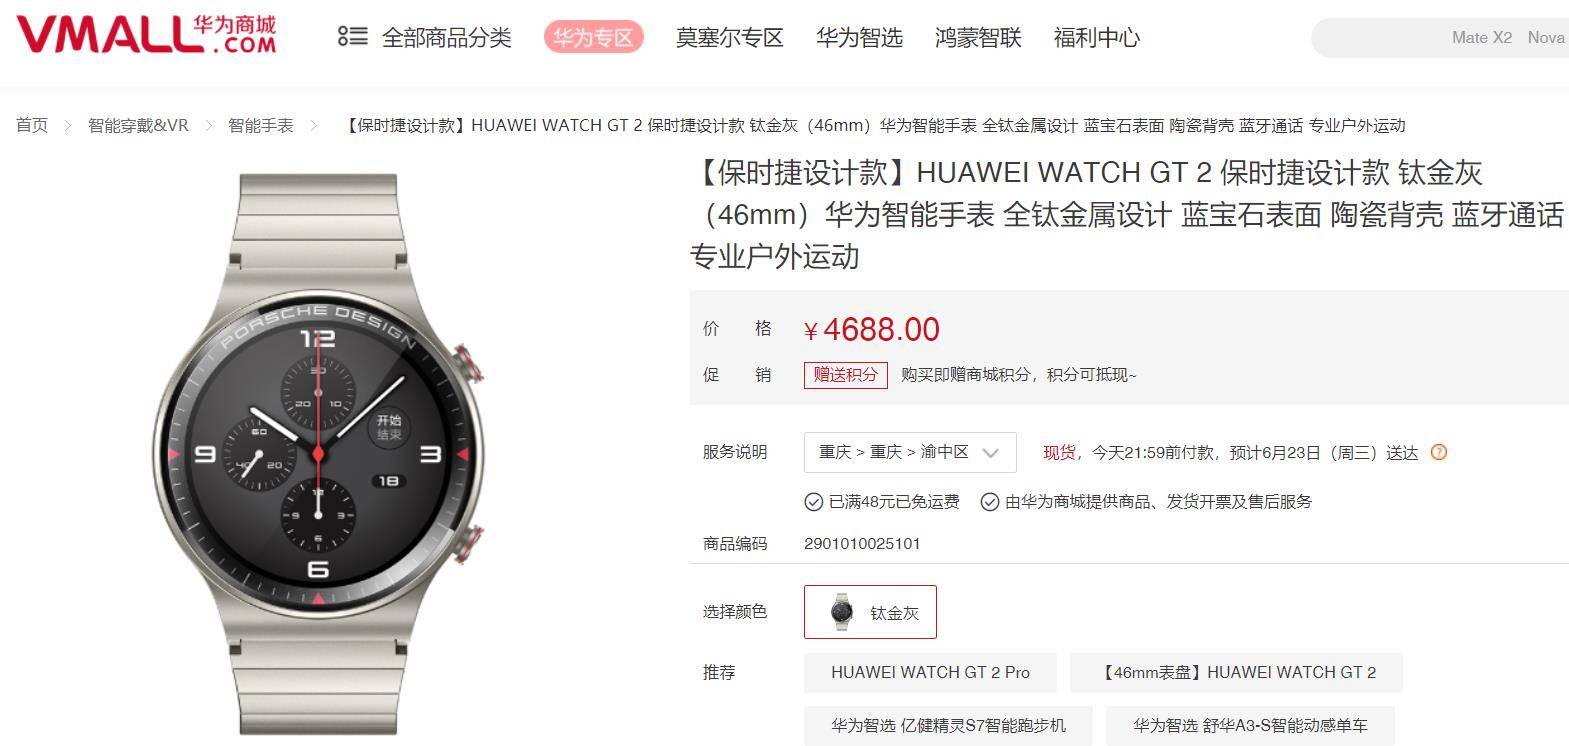 开箱分享 | 华为watch gt2保时捷设计款,高端智能手表